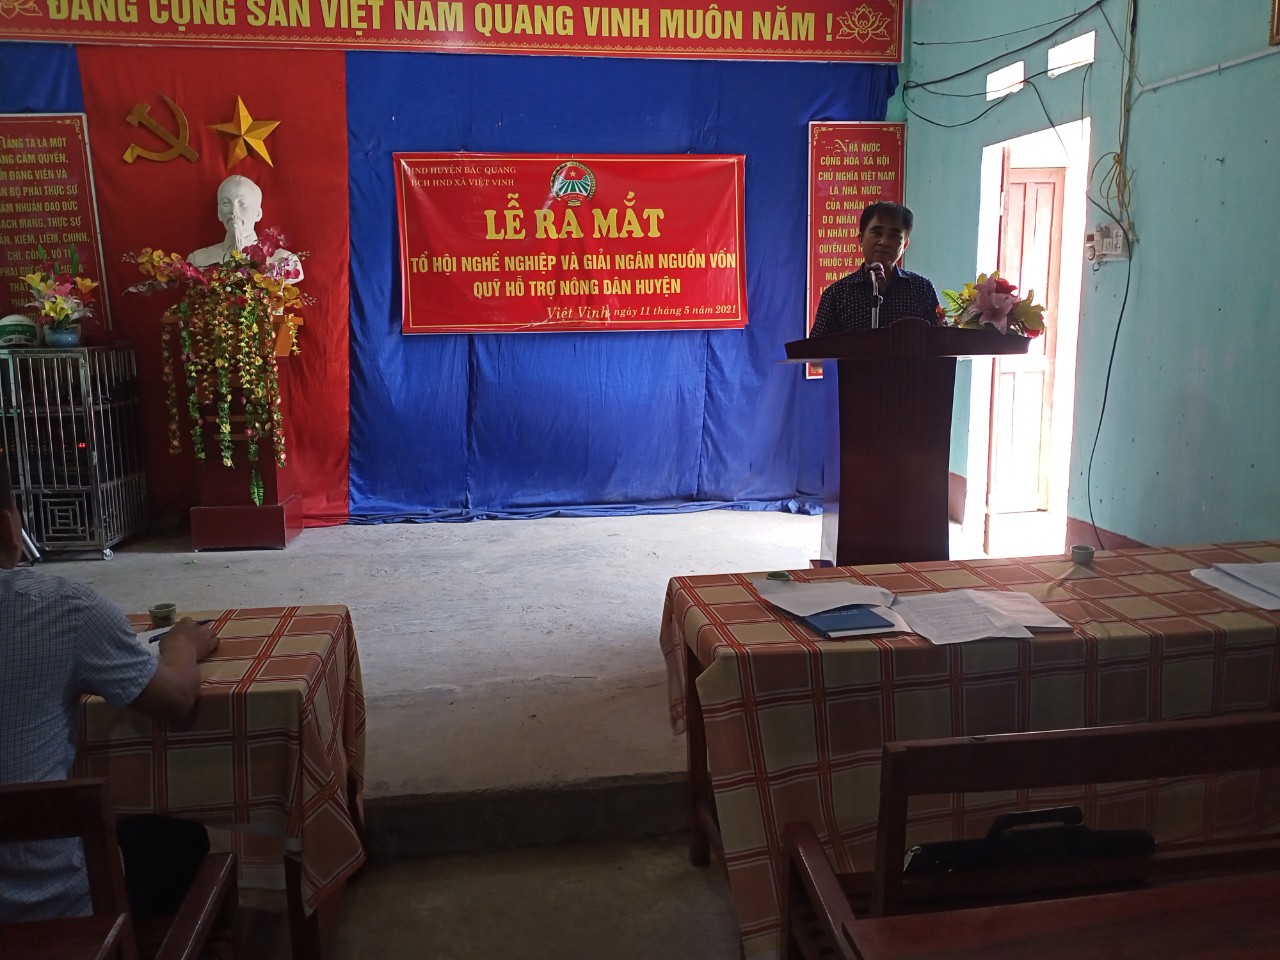 Hội nông dân xã Việt Vinh tổ chức lễ ra mắt tổ hội nghề nghiệp và giải ngân nguồn vốn quỹ hỗ trợ nông dân huyện Bắc Quang.